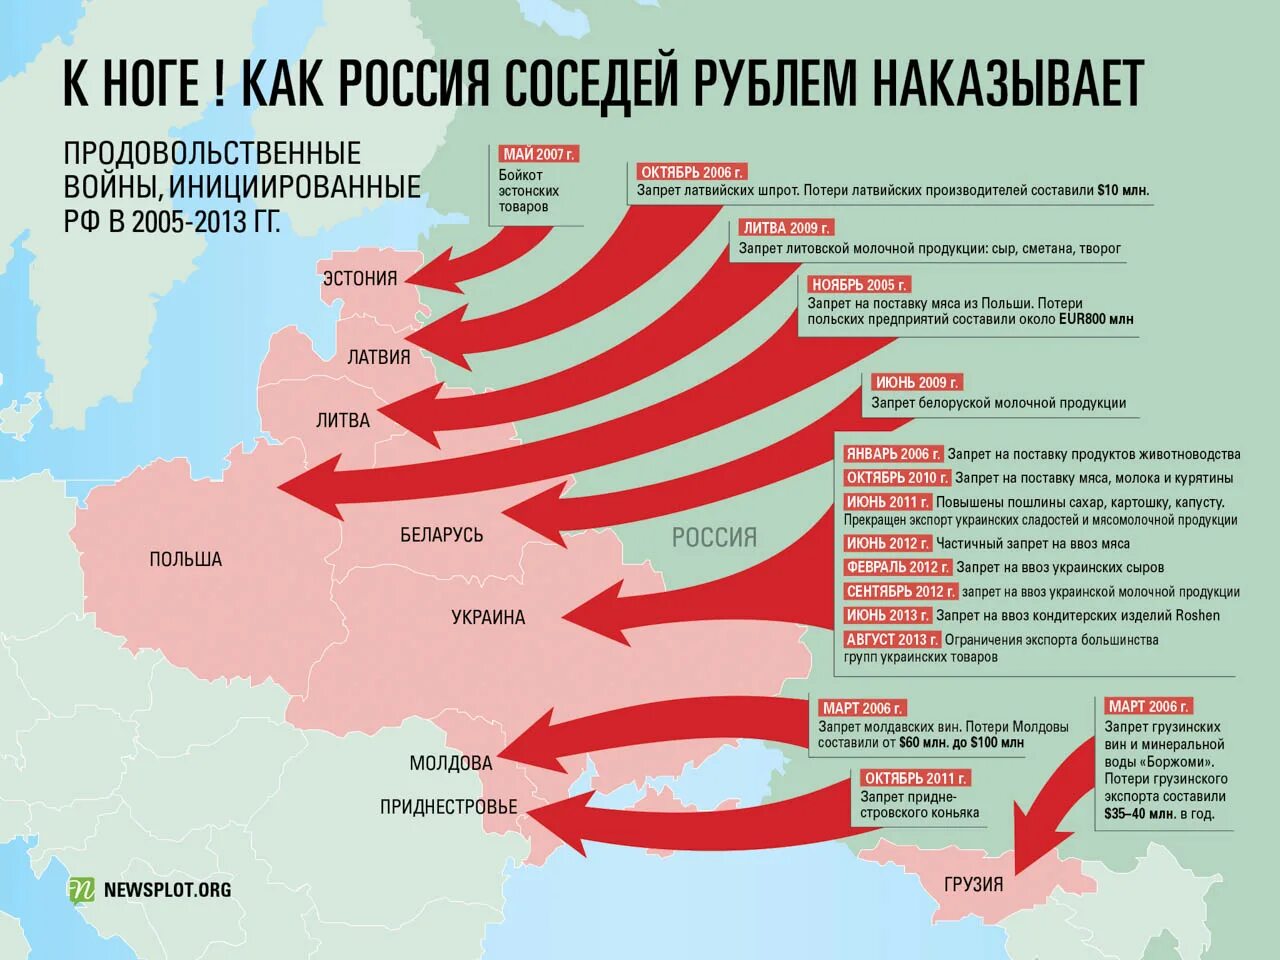 План вторжения на Украину. Карта вайна Росси в Украину. Стары которые воюют с Украиной. Государство, с которым воевала Россия. Какие группы поддерживают россию